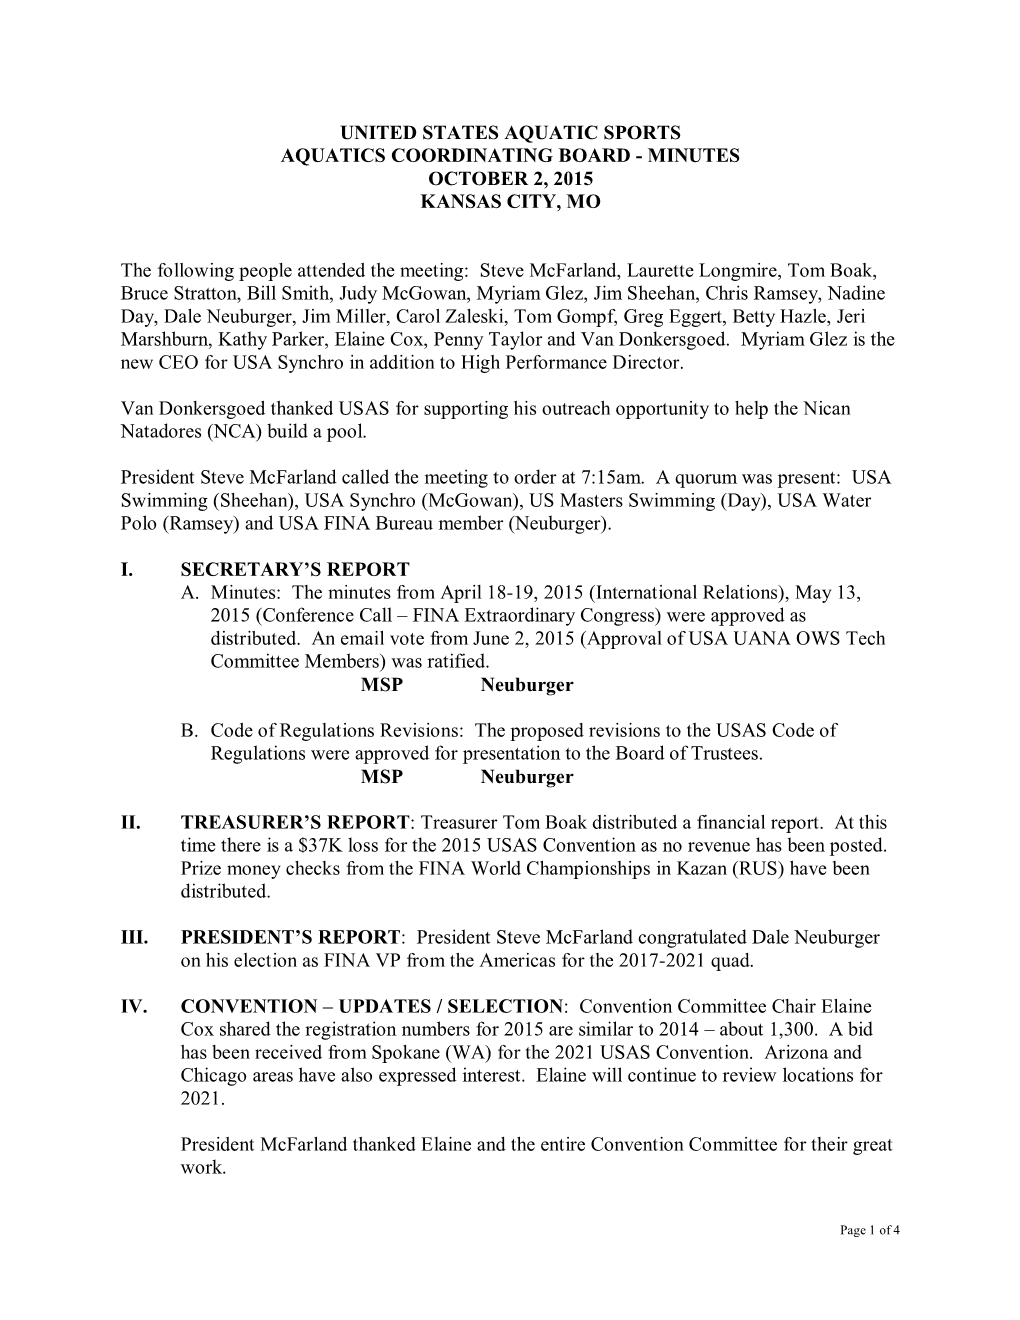 United States Aquatic Sports Aquatics Coordinating Board - Minutes October 2, 2015 Kansas City, Mo